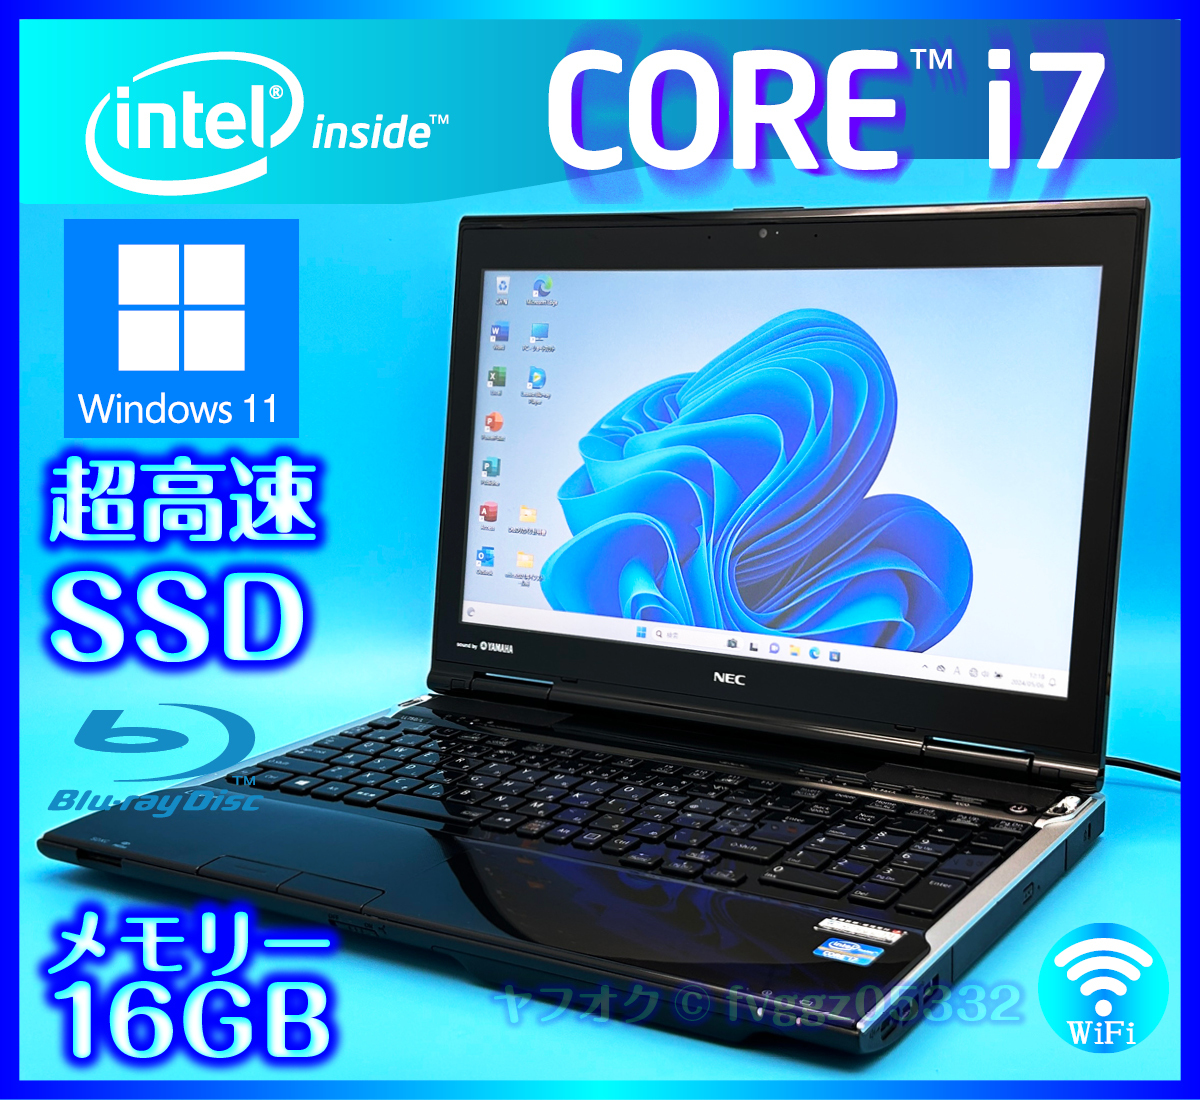 NEC Core i7 Windows 11 SSD 新品 1000GB +外付HDD 1TB 大容量メモリー 16GB ブラック Office2021 Webカメラ ノートパソコン LL750/Lの画像1